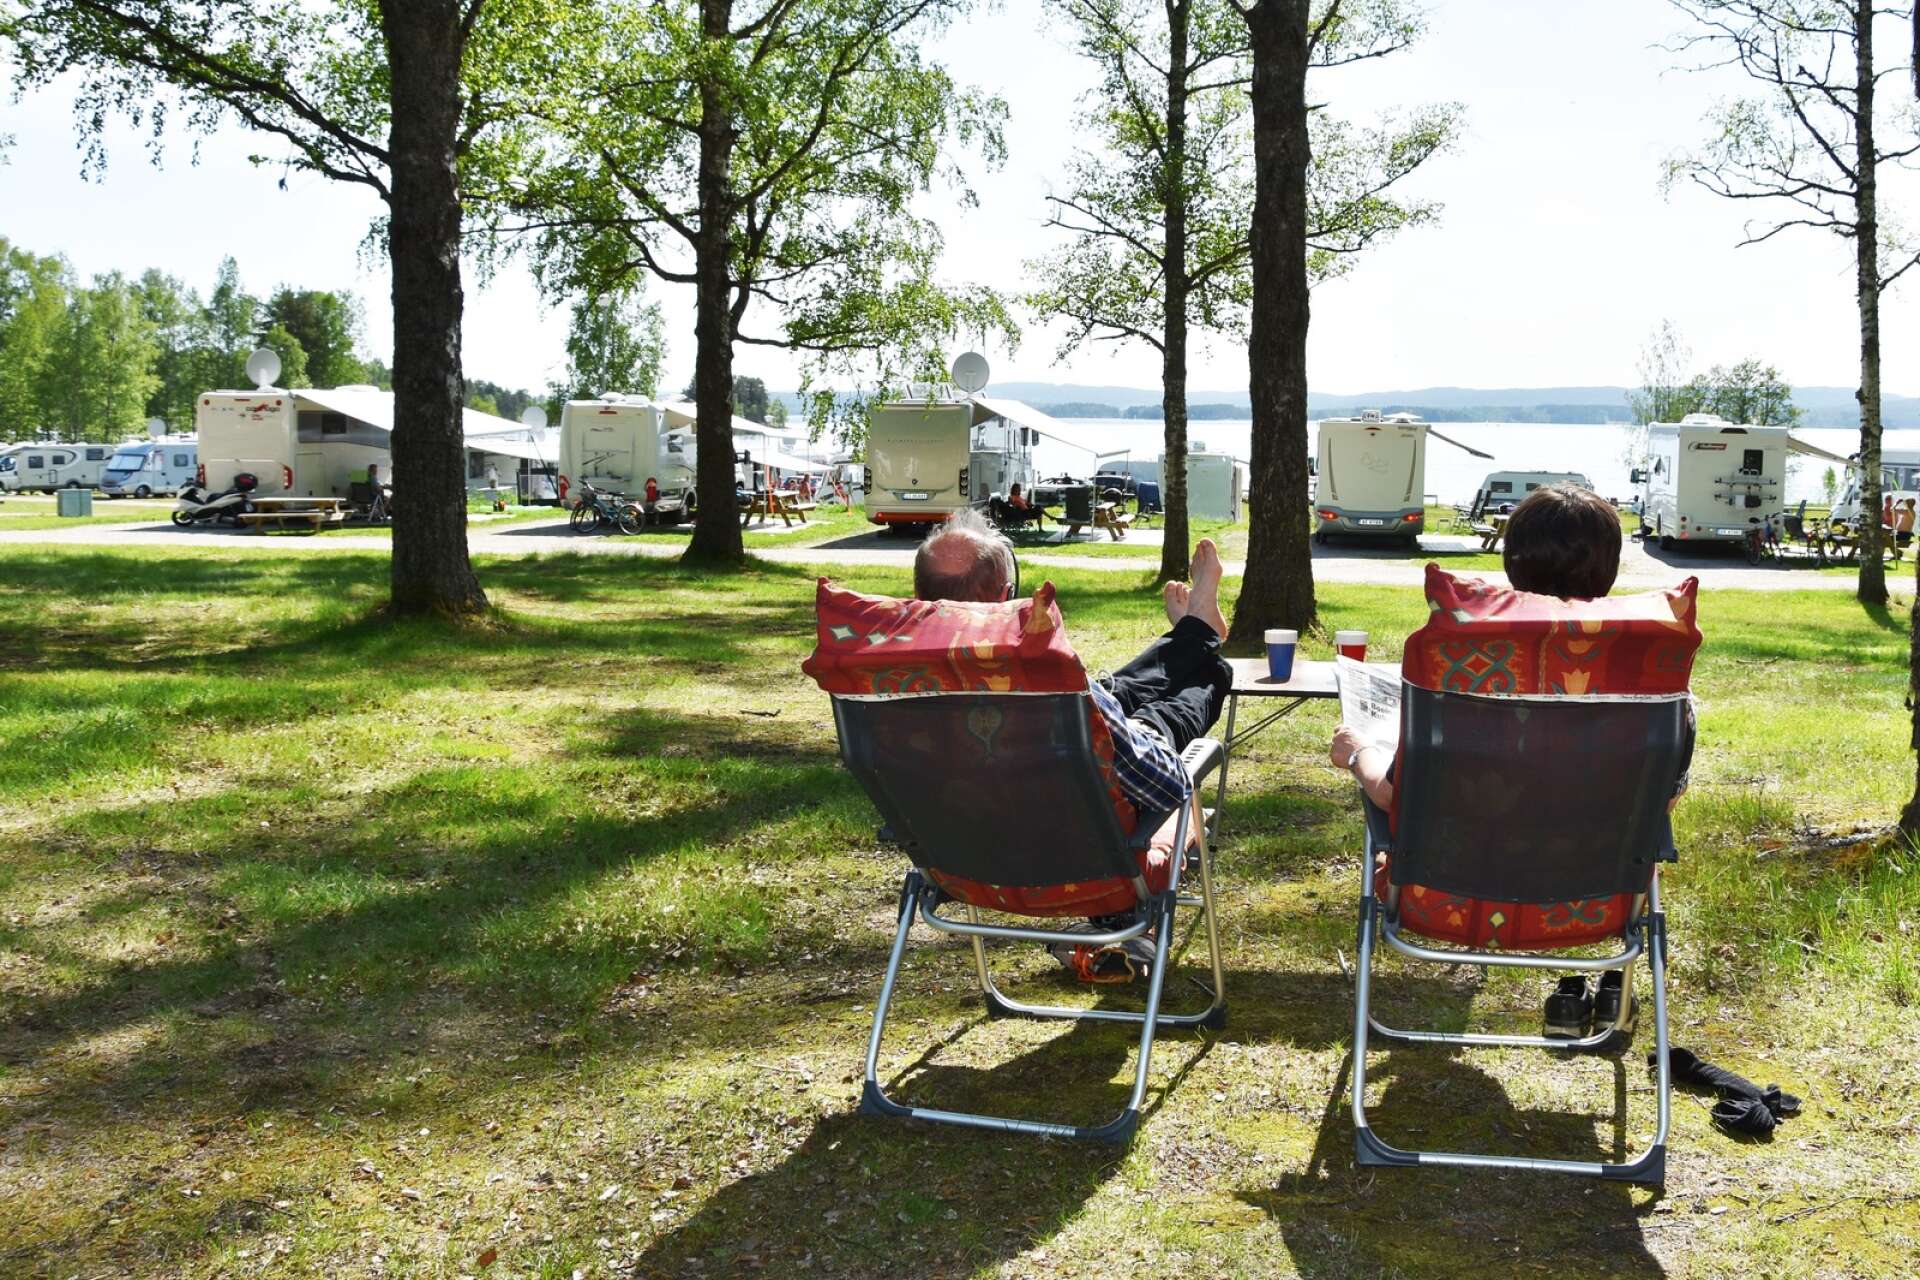 Ingestrands camping ägs av Arvika kommun. Något som Moderaterna i kommunen vill ändra på. 